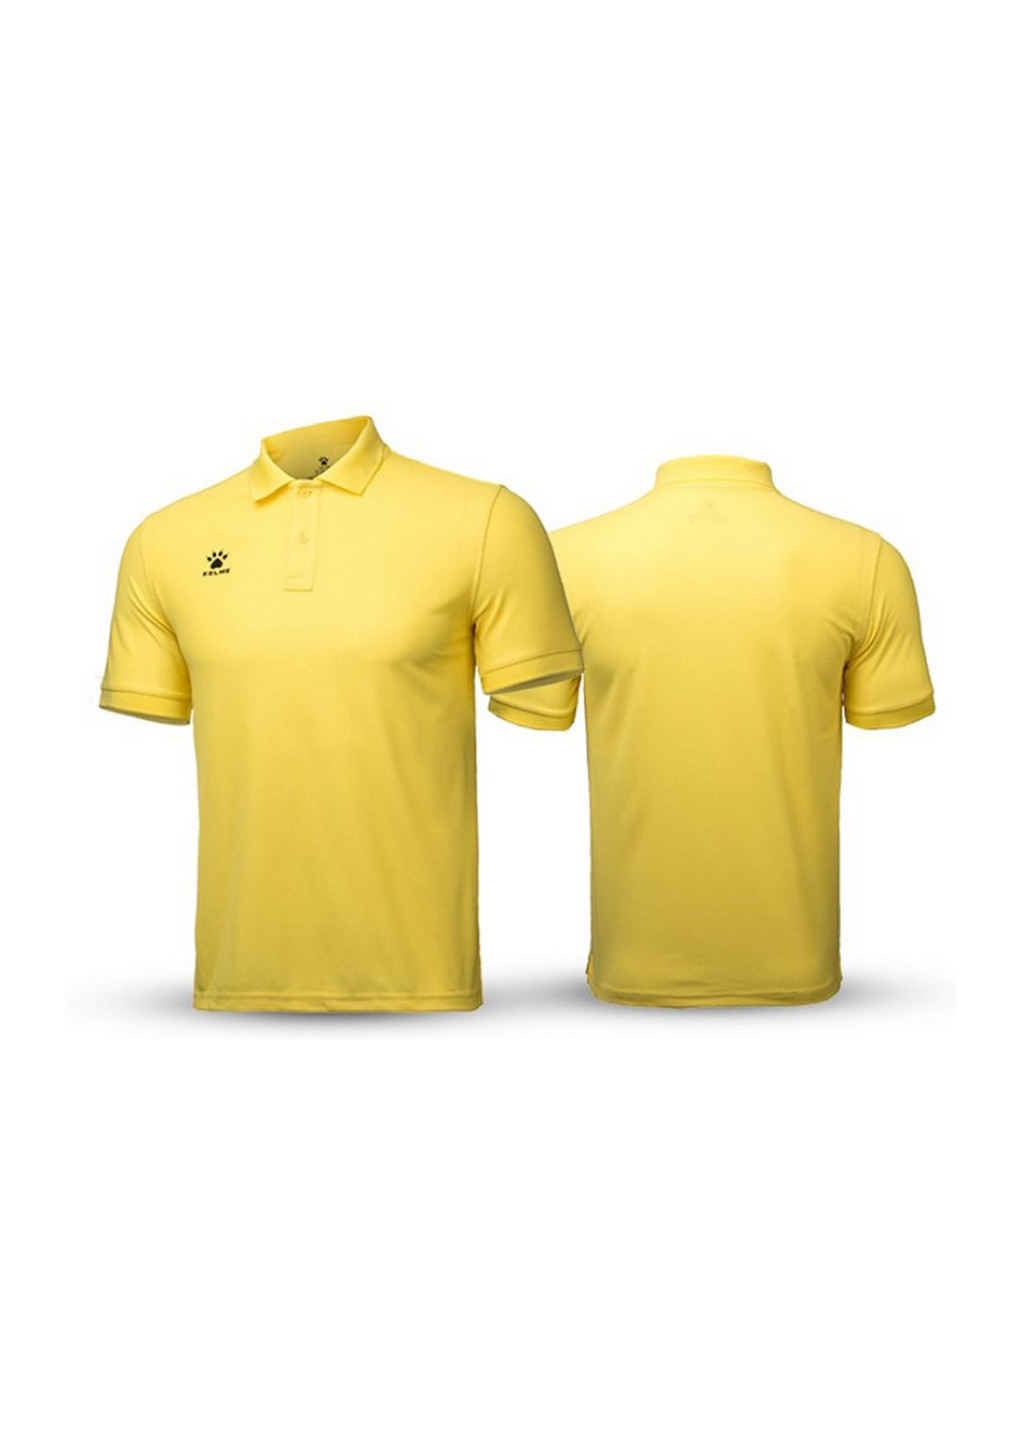 Желтая футболка-поло для мужчин Kelme с логотипом